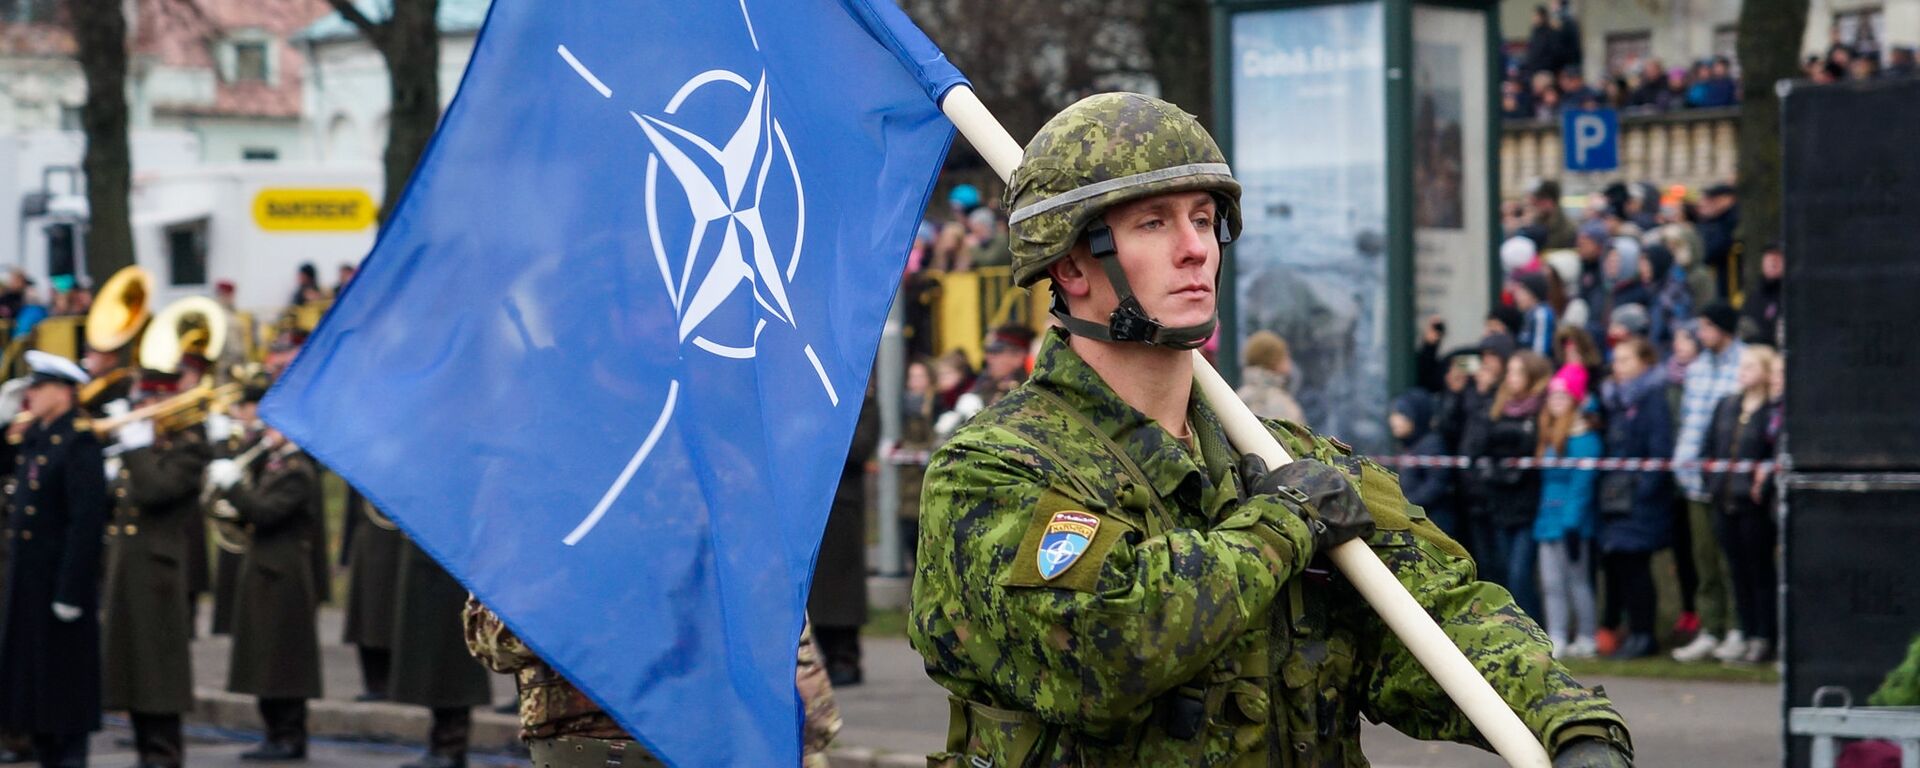 Военнослужащий Канады несет флаг НАТО на военном параде в Риге - Sputnik Латвия, 1920, 21.12.2021